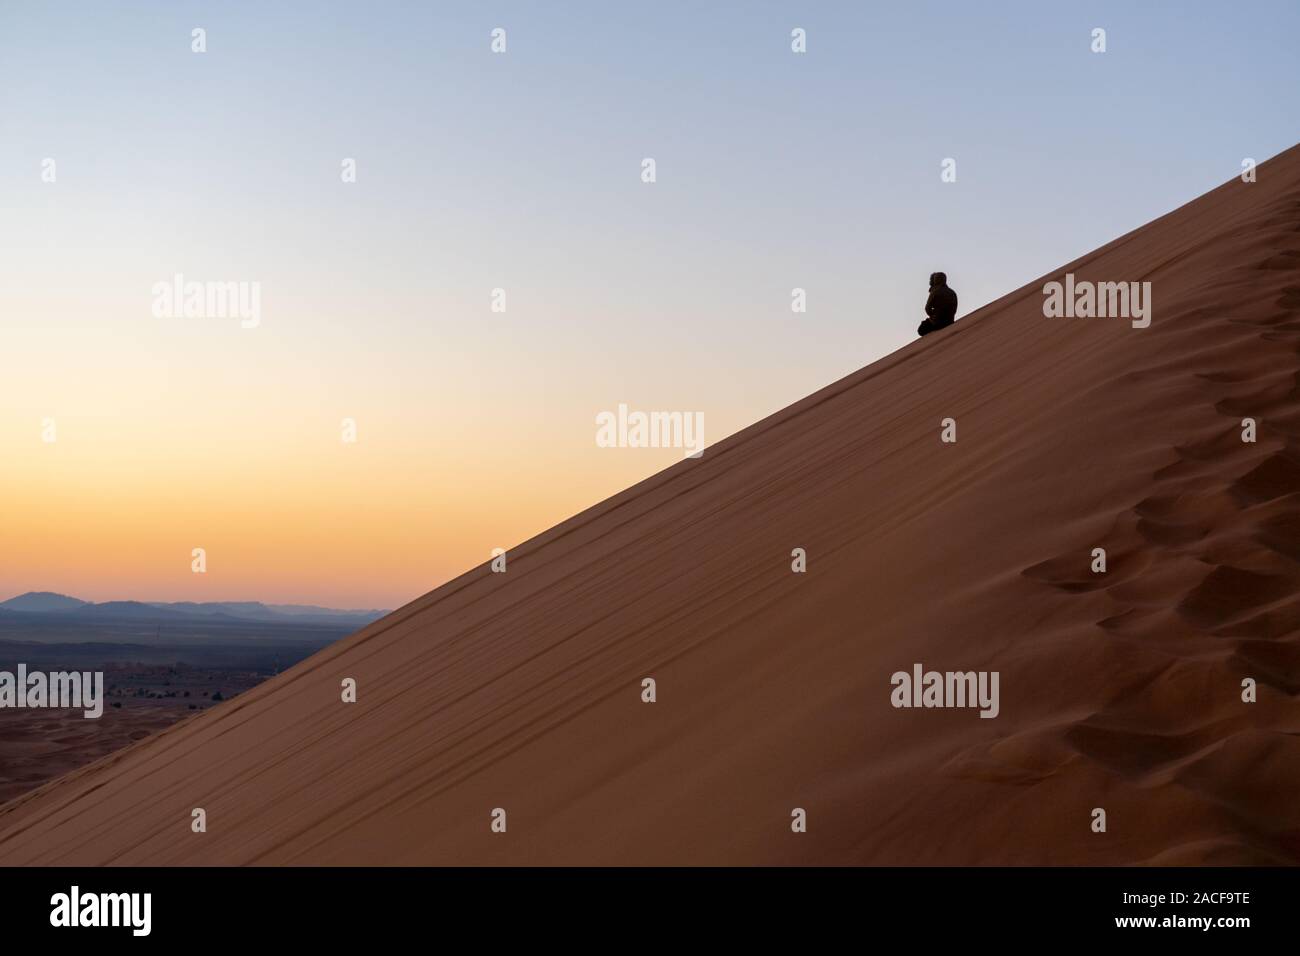 Man on the slope of Sand dune of Erg Chebbi in the Sahara Desert, Morocco Stock Photo